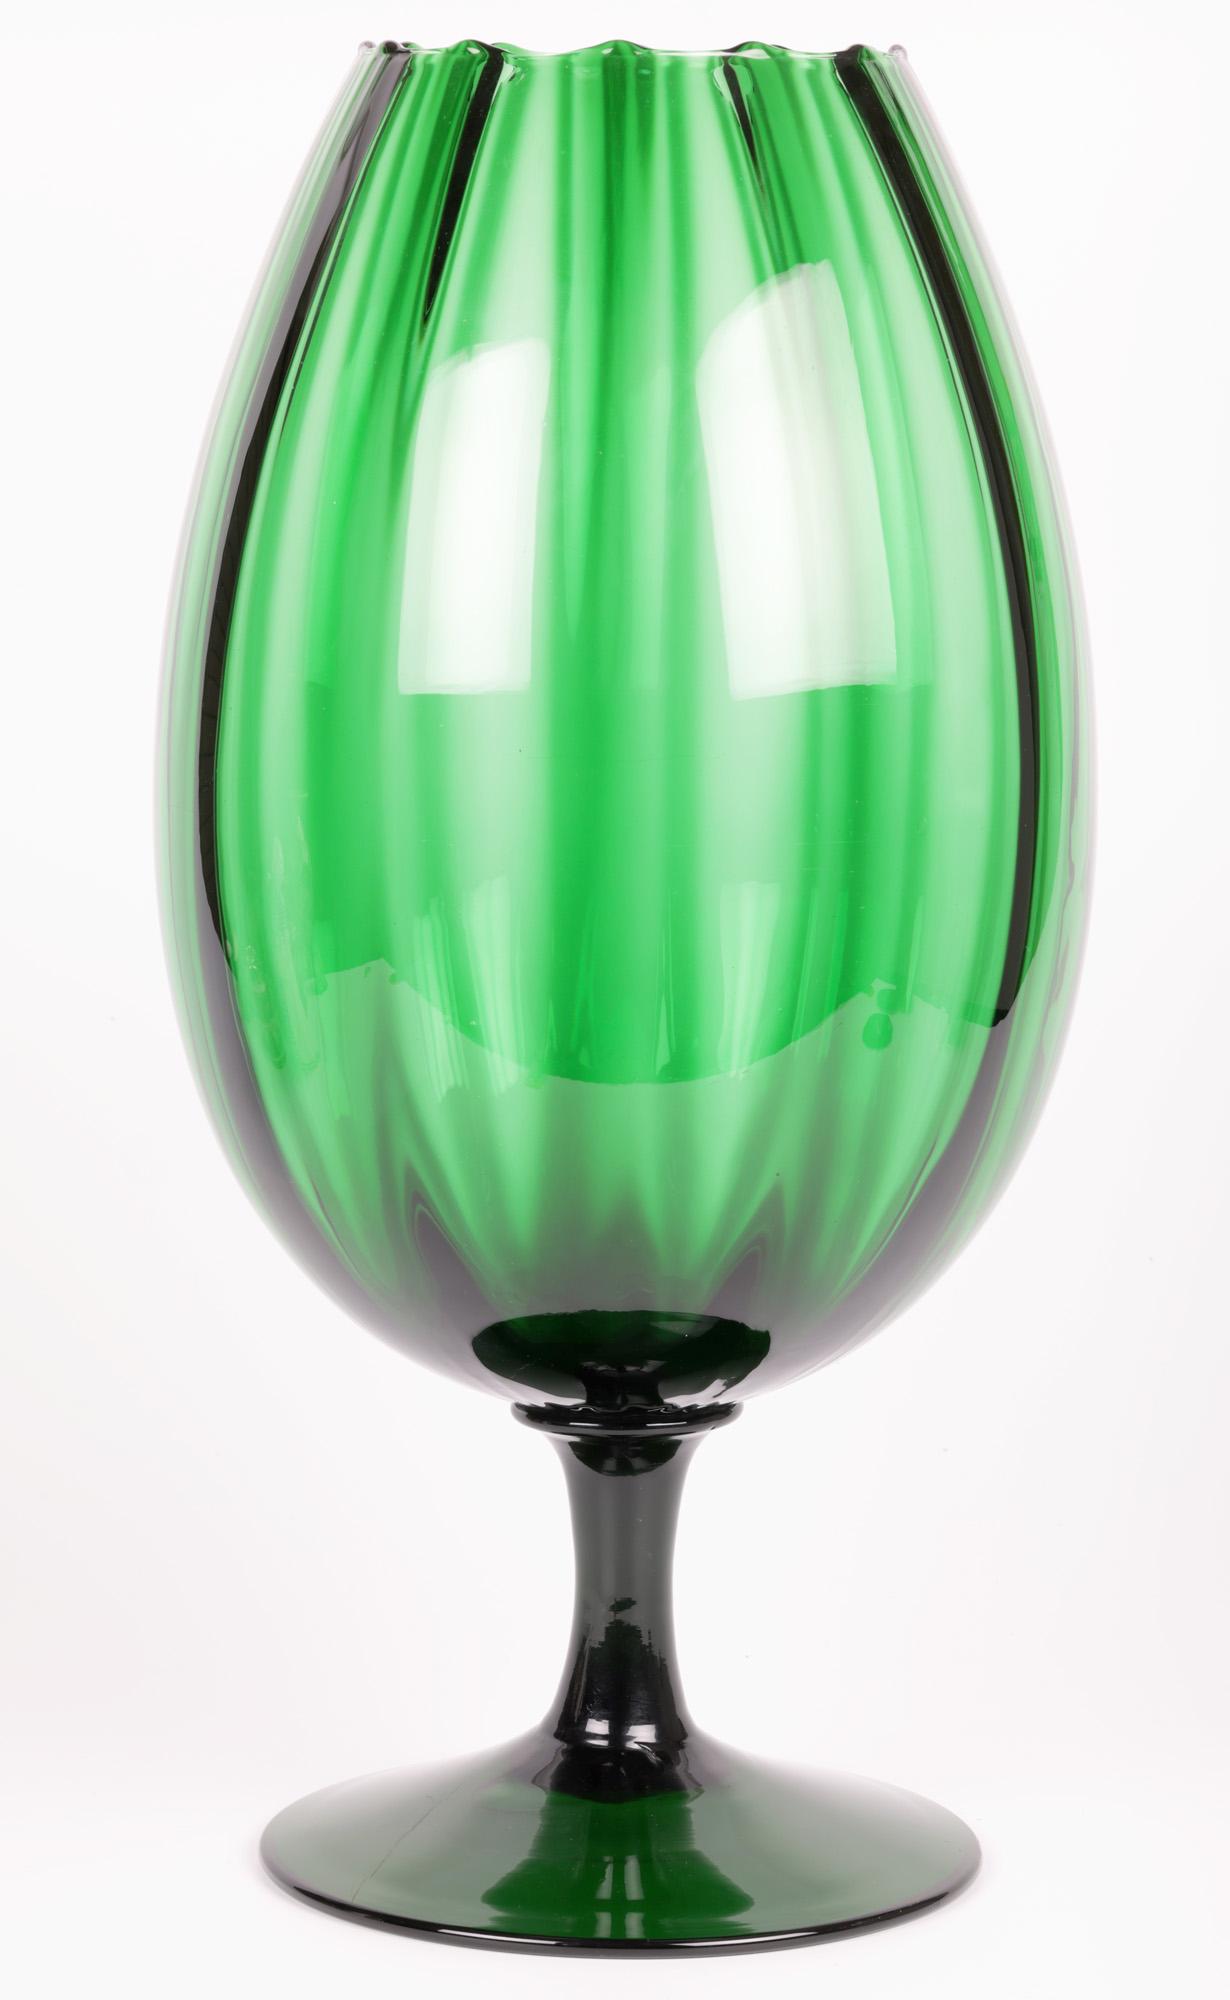 Empoli Italian Large Green Art Glass Pedestal Goblet Vase 7